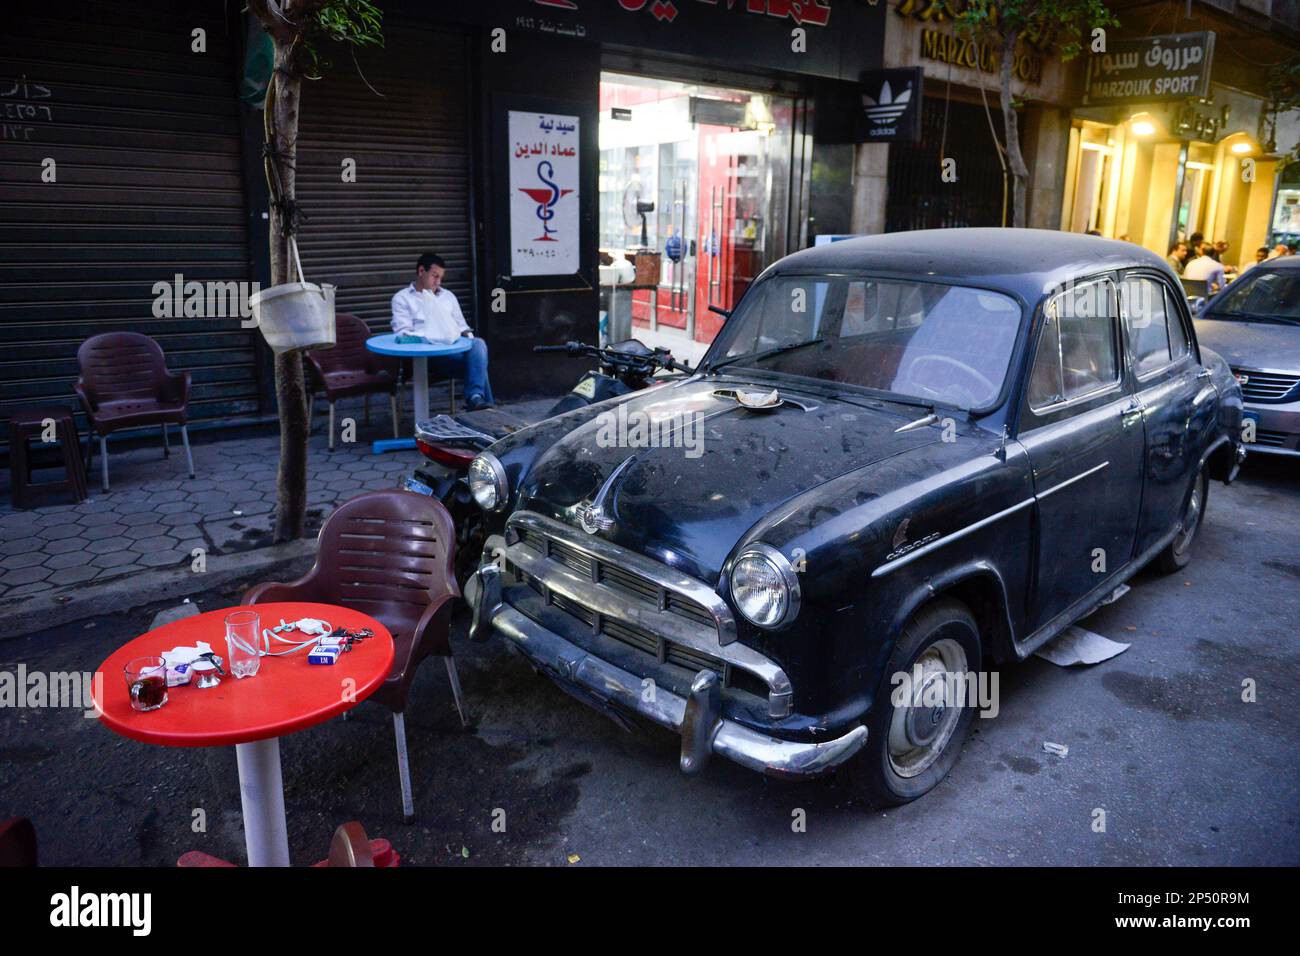 EGYPT, Cairo, old town, vintage car Oxford Morris Stock Photo